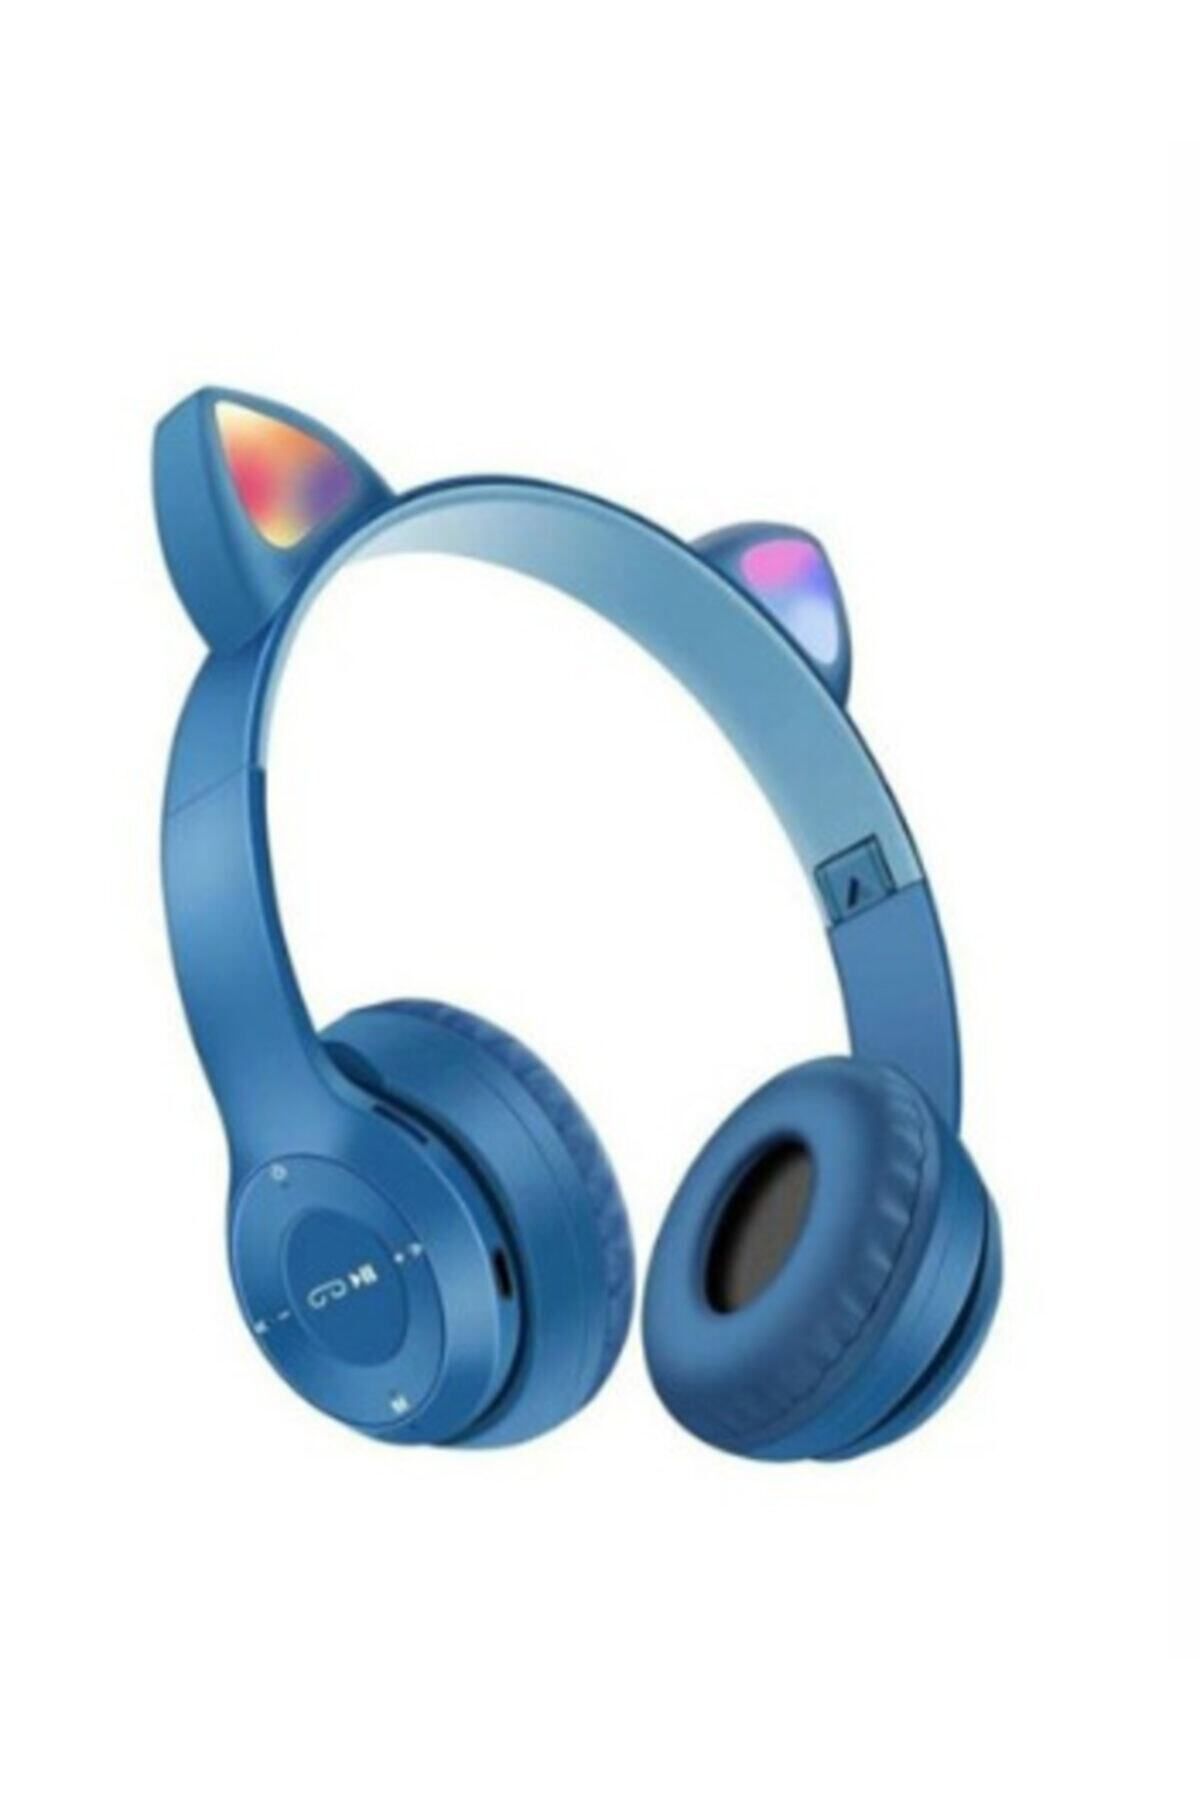 gnctech Kablosuz Bluetooth Kulaküstü Kedili P47m Kulaklık Rgb Işıklı Kedi Desenli Kulaklık